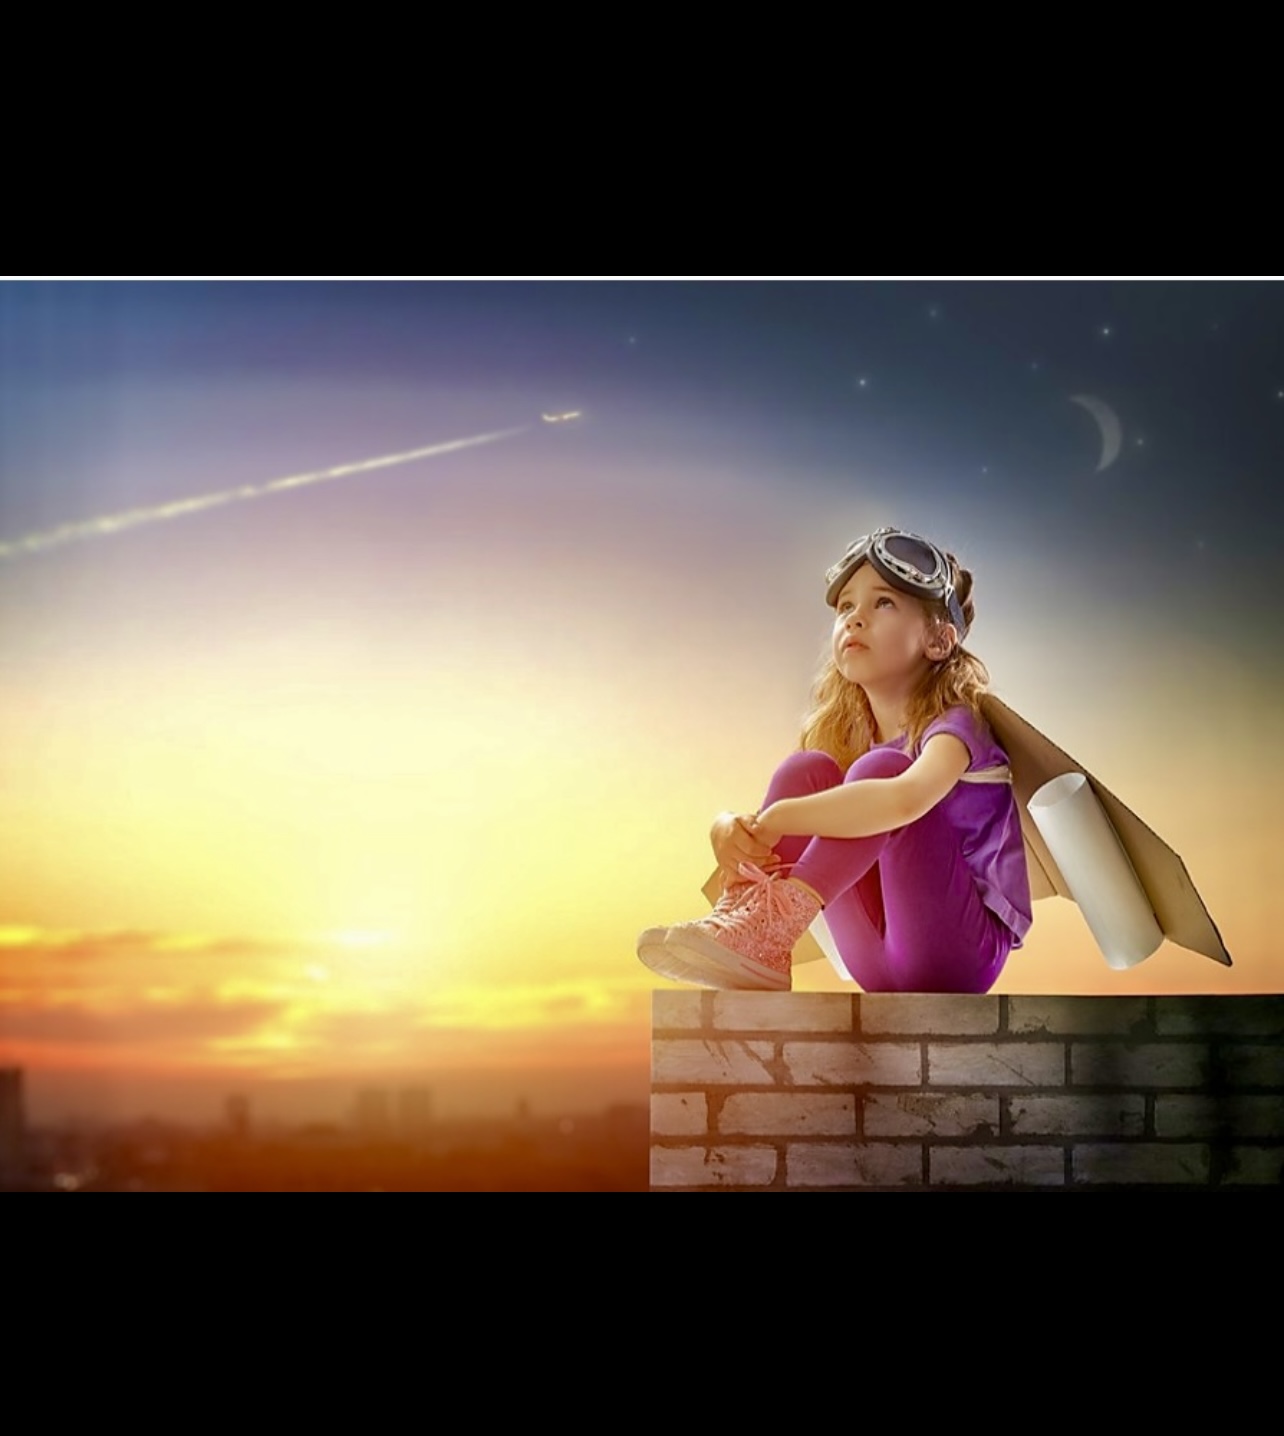 Une petite fille assise sur un mur de briques au coucher du soleil, entourée d'une aura de spiritualité.